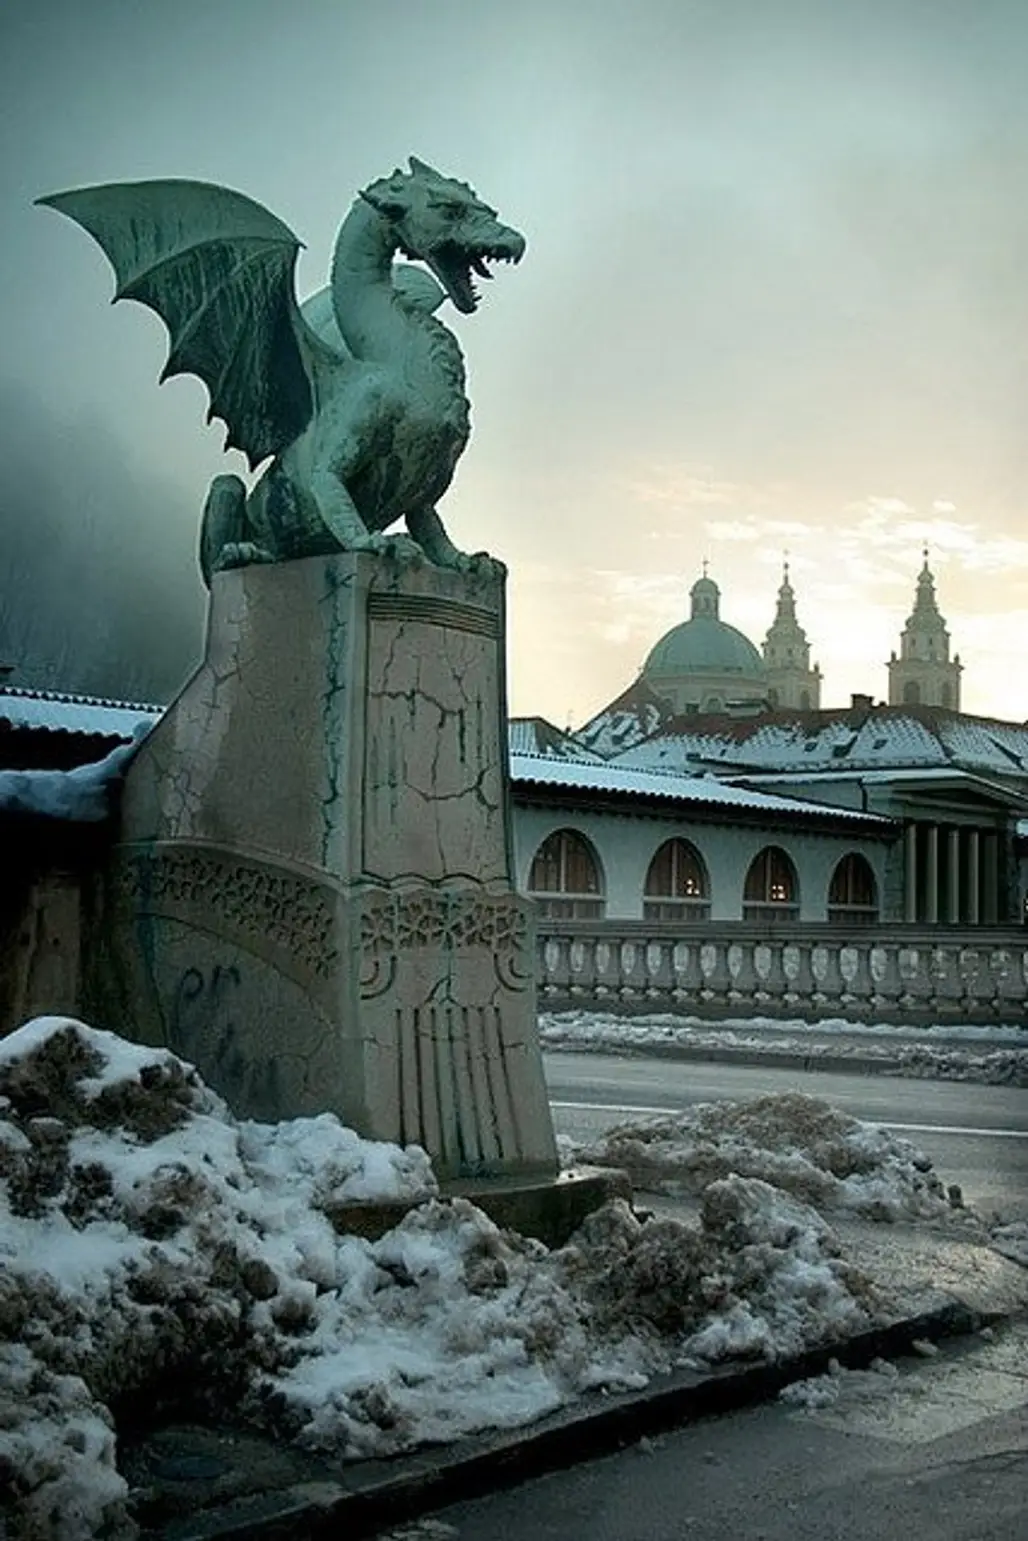 Dragon Bridge,statue,sculpture,landmark,monument,